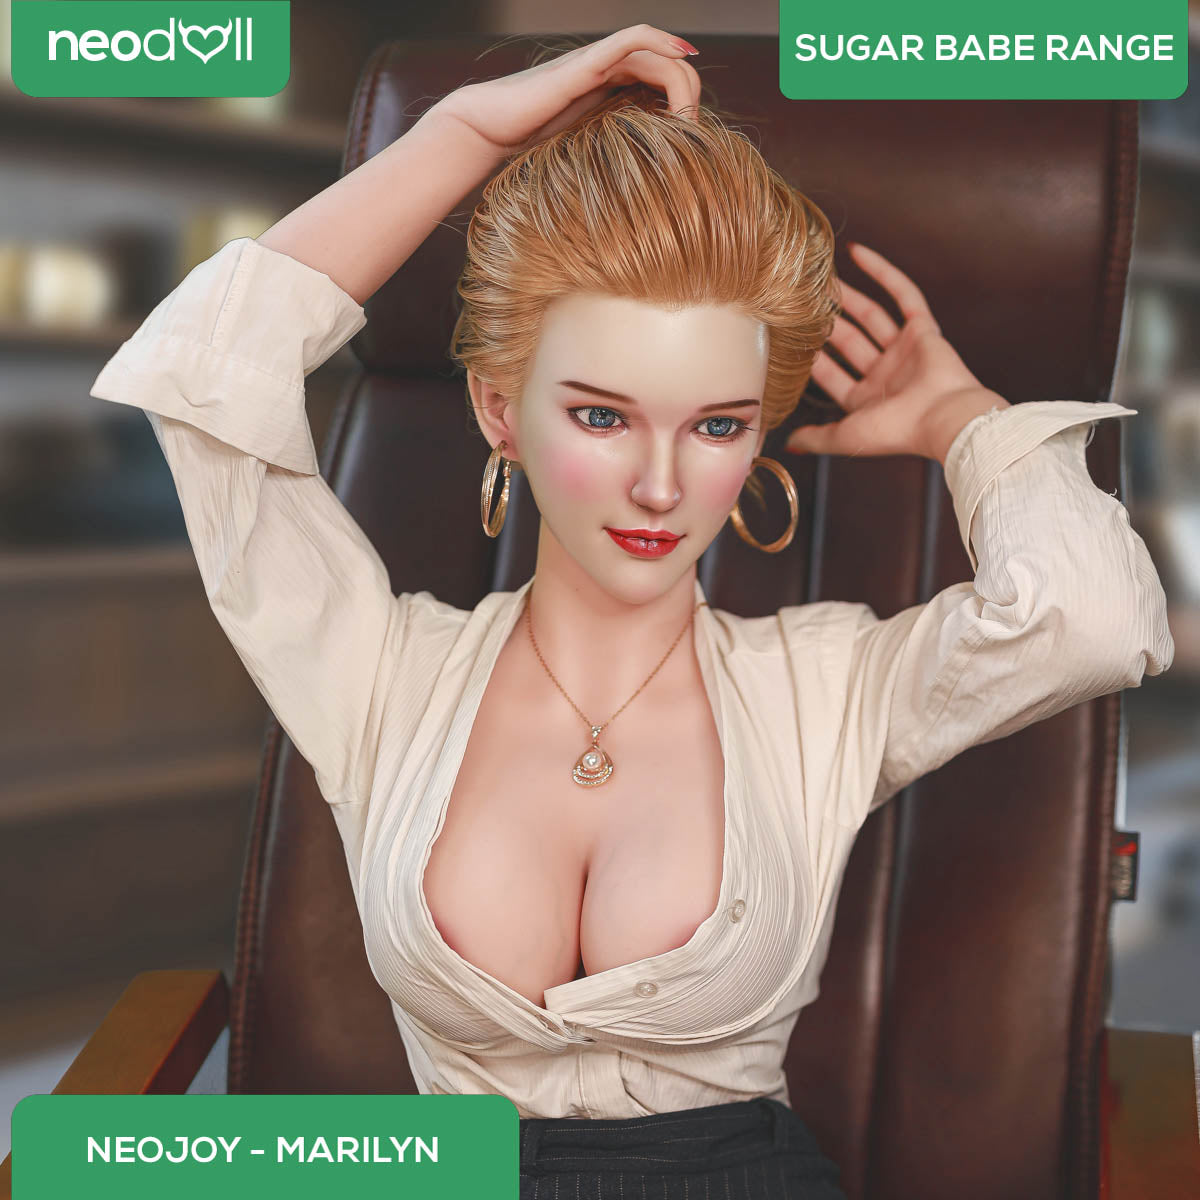 Neodoll Sugar Babe - Marilyn - Full Silicone Sex Doll - 163cm - Silicone